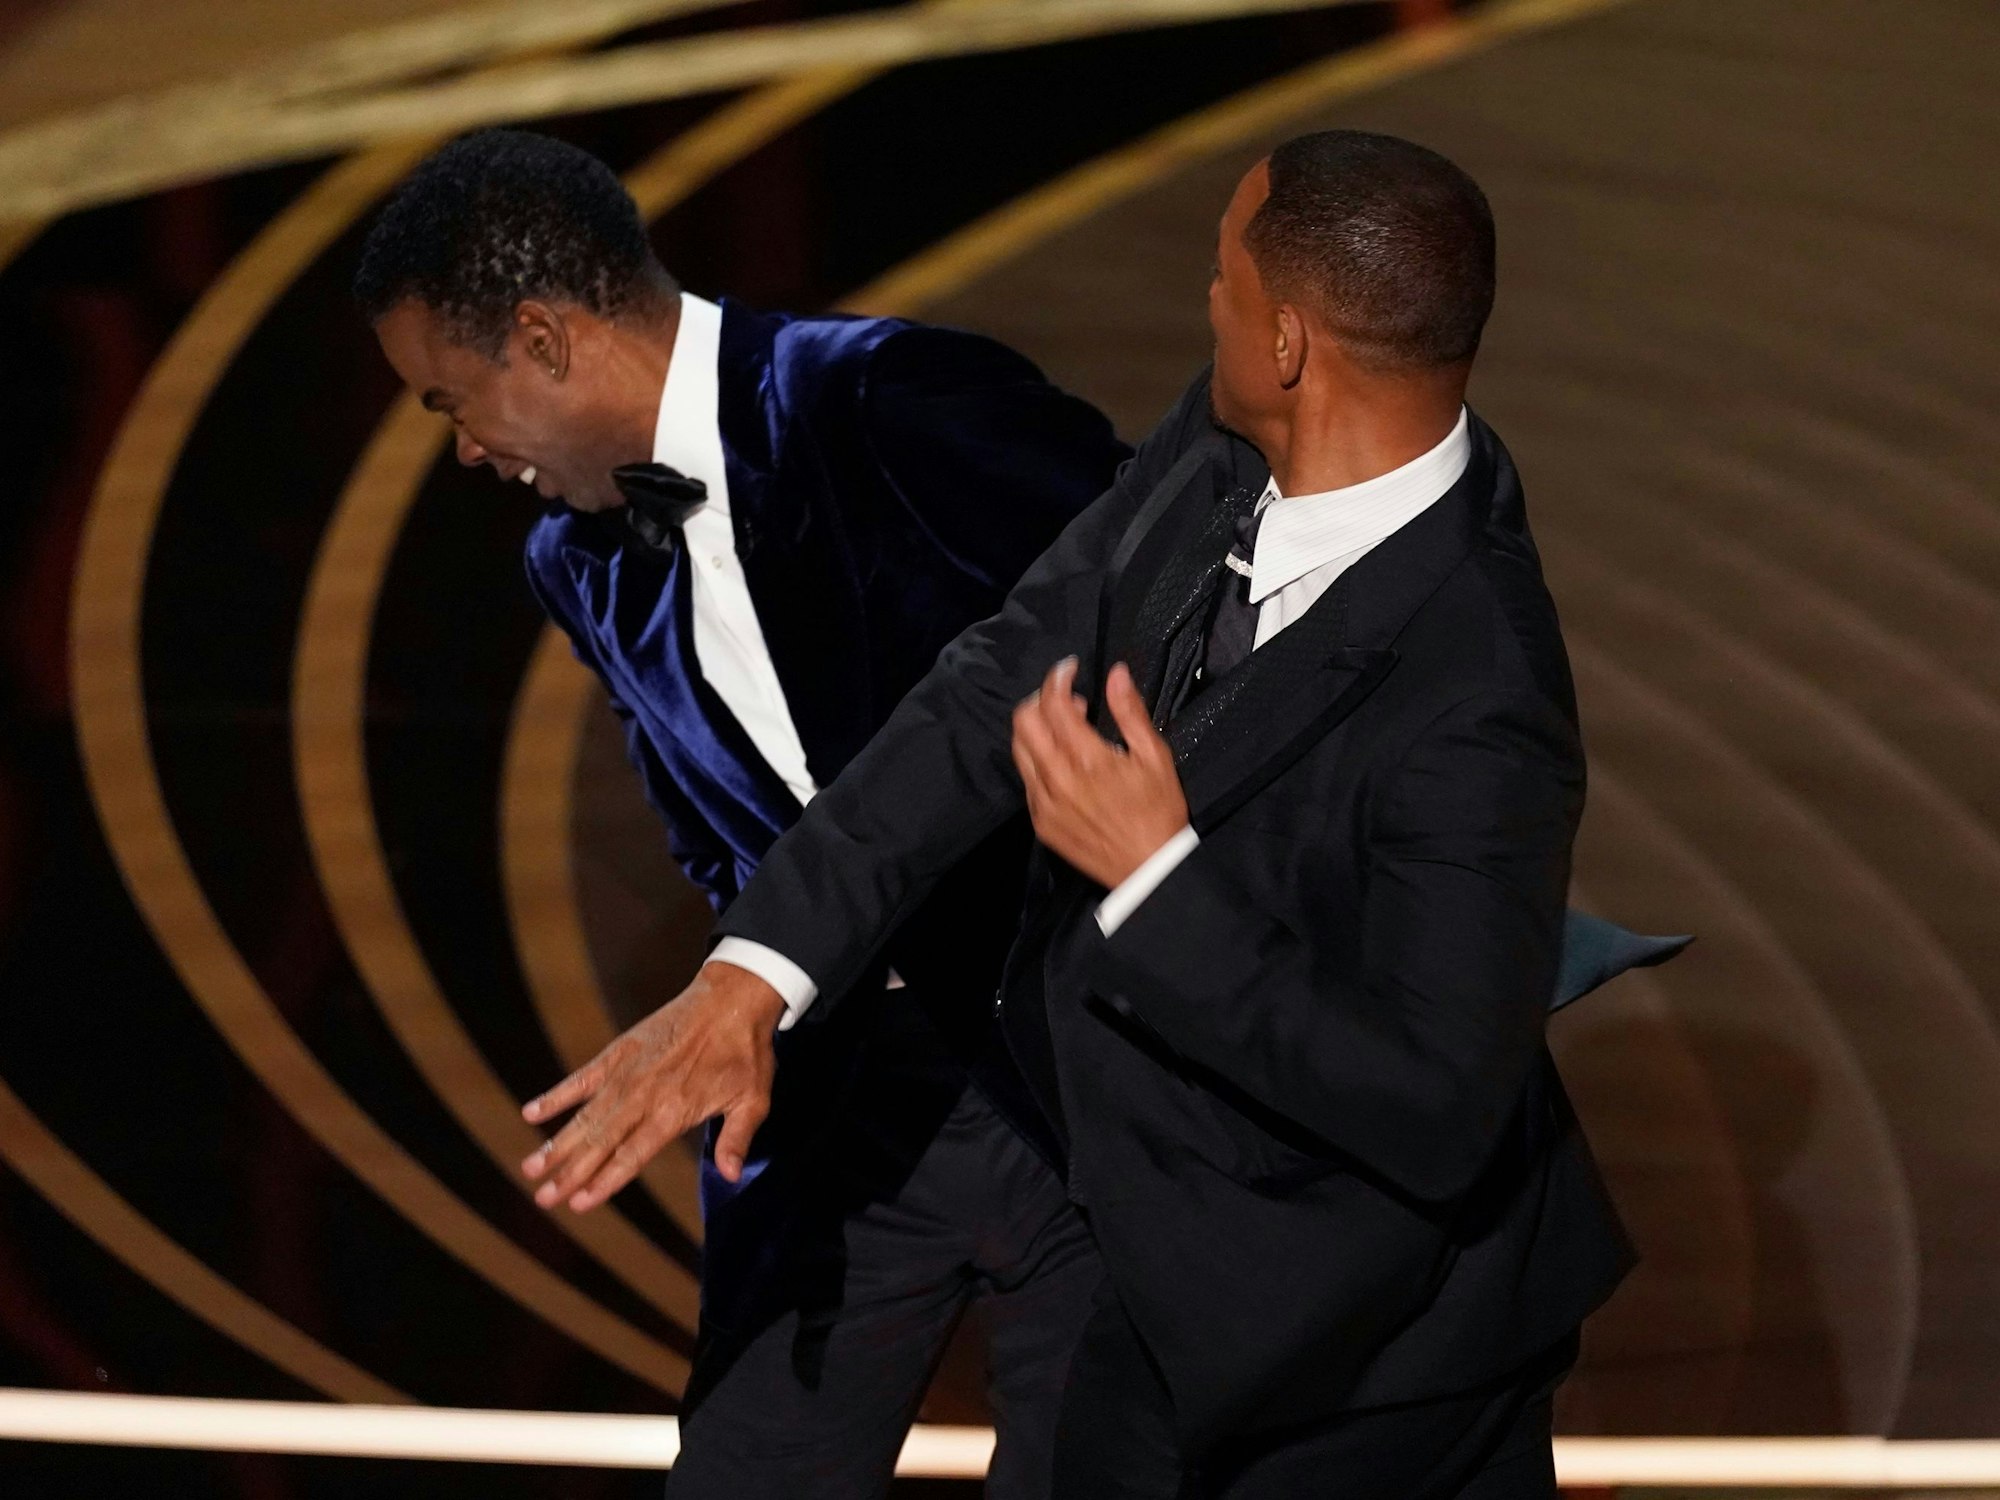 Will Smith (r.) verpasst Chris Rock bei der Oscar-Verleihung eine Ohrfeige